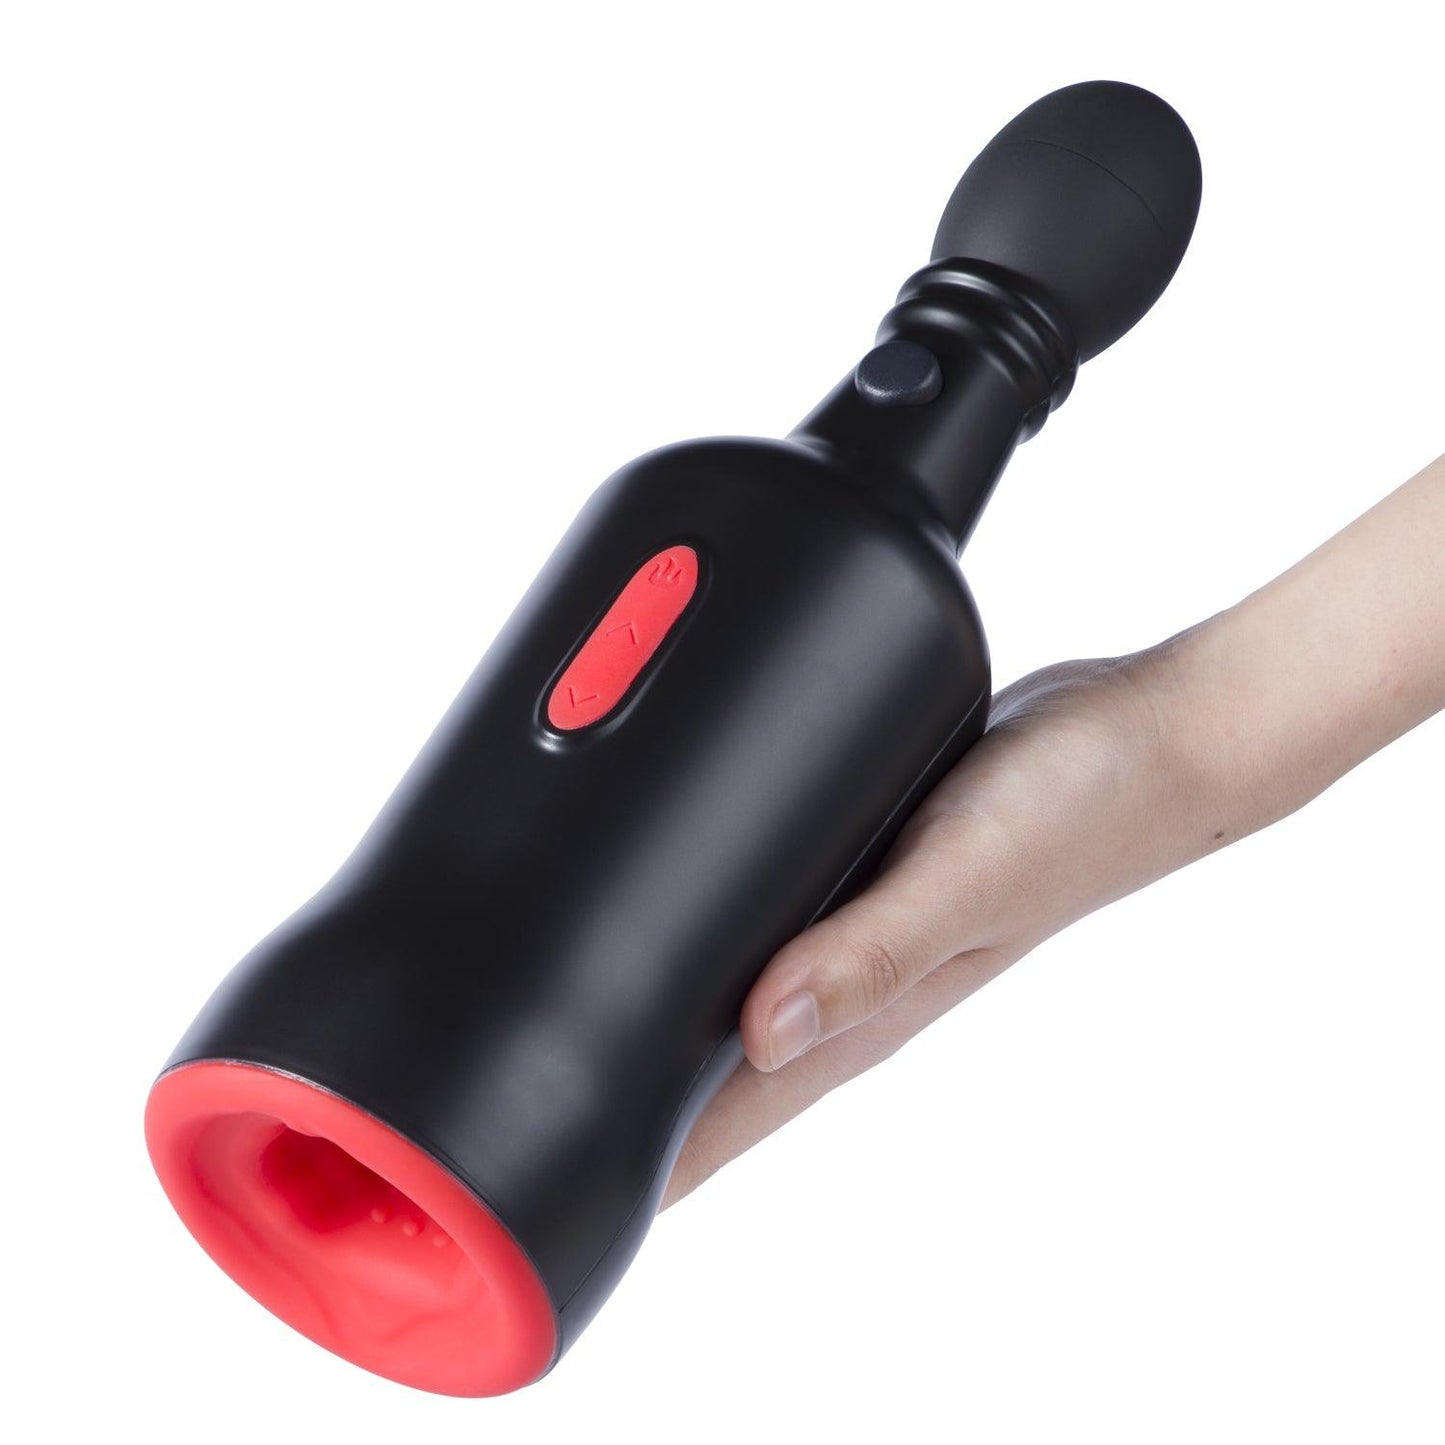 Finley - Automatic Male Masturbator Cup Blowjob Machine